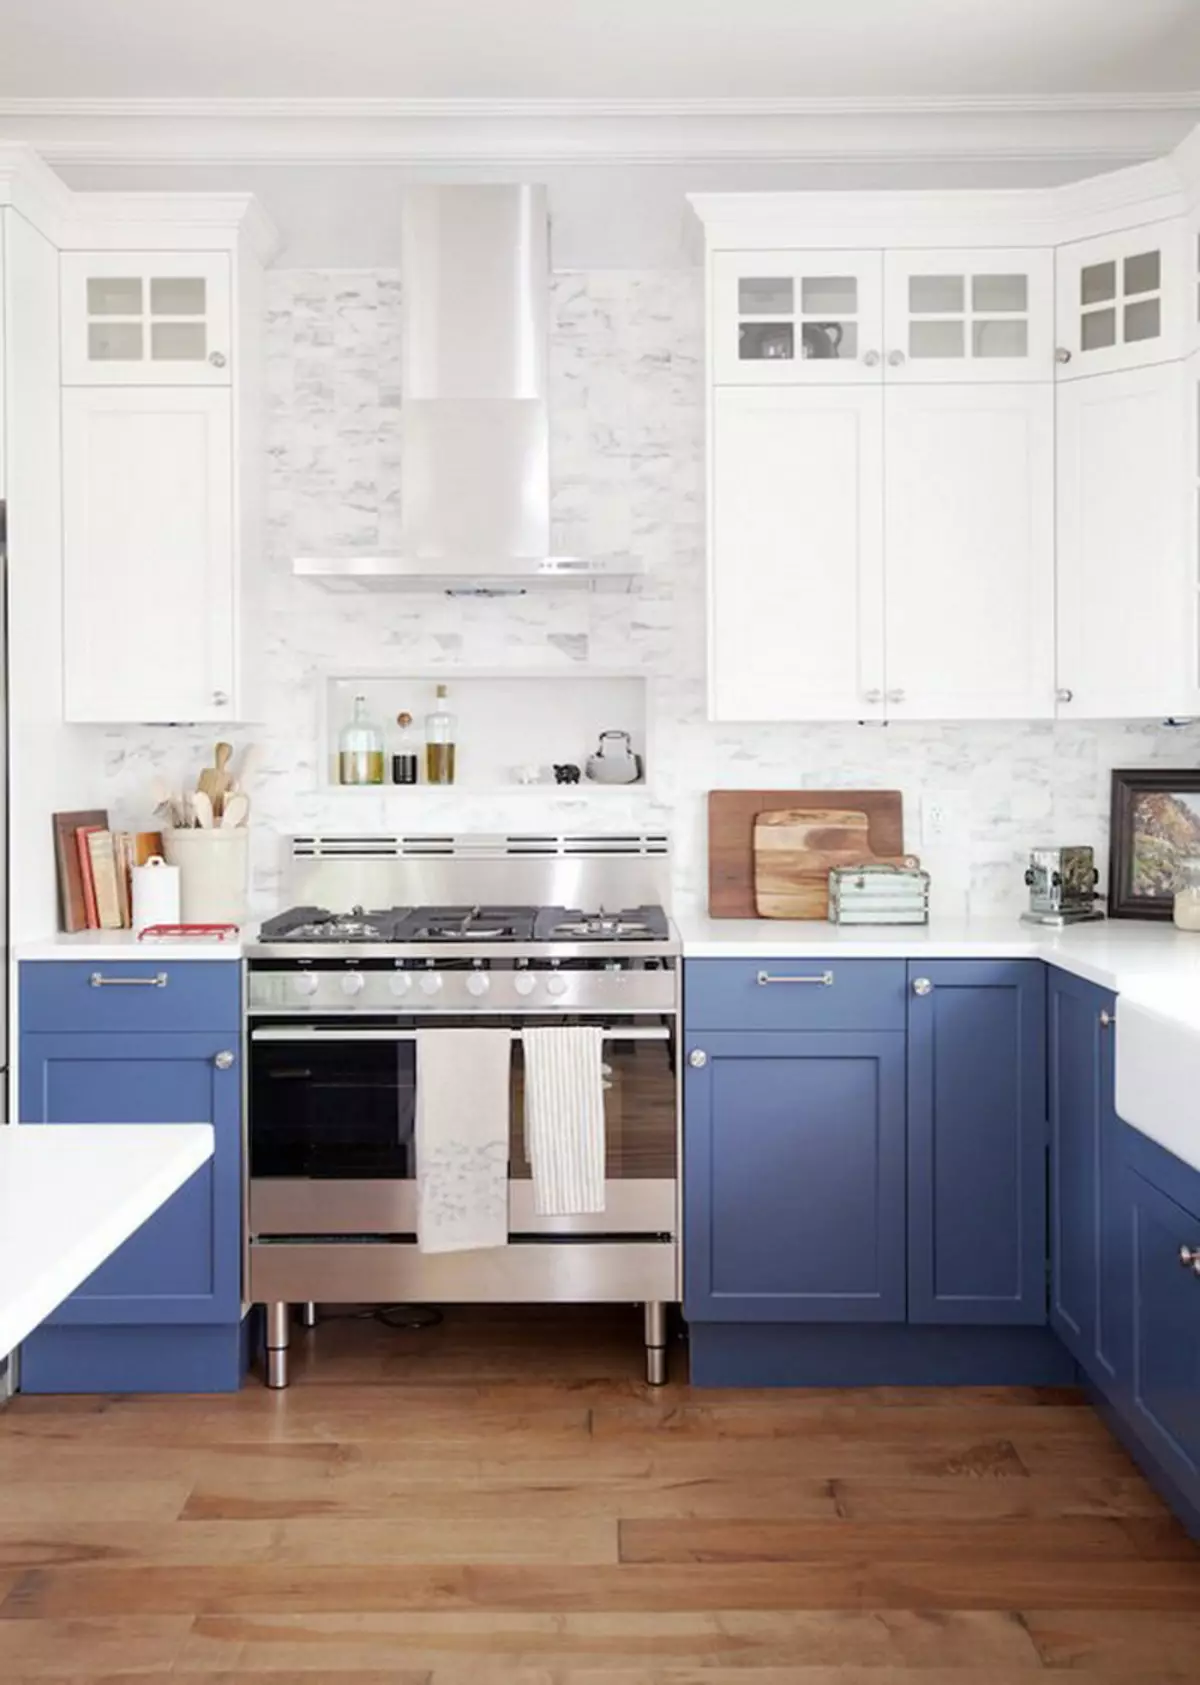 Cucina bianca-blu (64 foto): Caratteristiche dell'auricolare della cucina in colore bianco-blu per la cucina Interior design, accenti sulle pareti in colori simili 9393_5